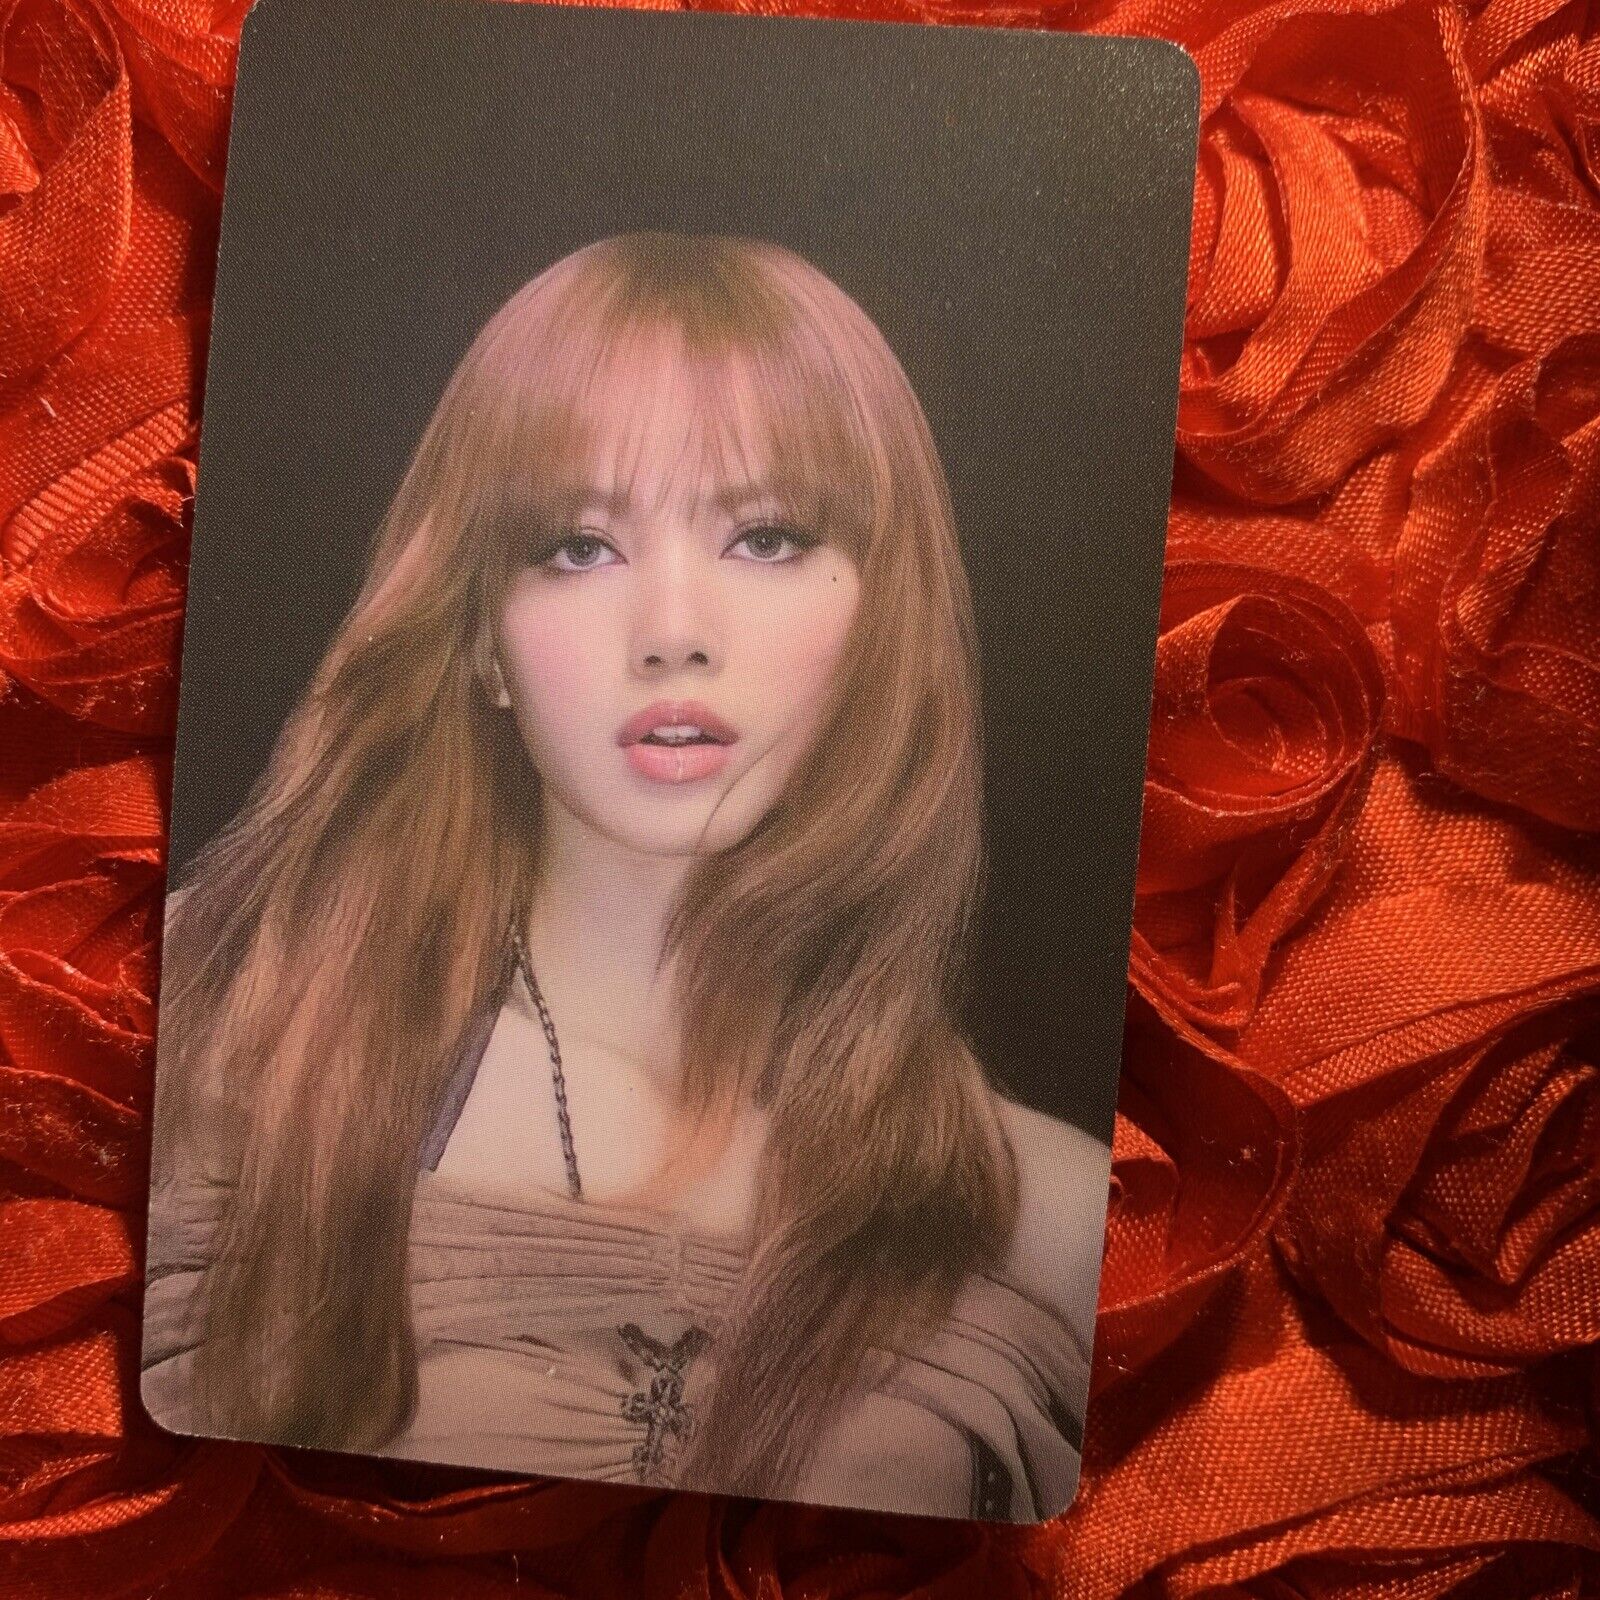 LISA BLACKPINK VOGUE RED Edition Celeb K-pop Girl Photo Card LALISA brown